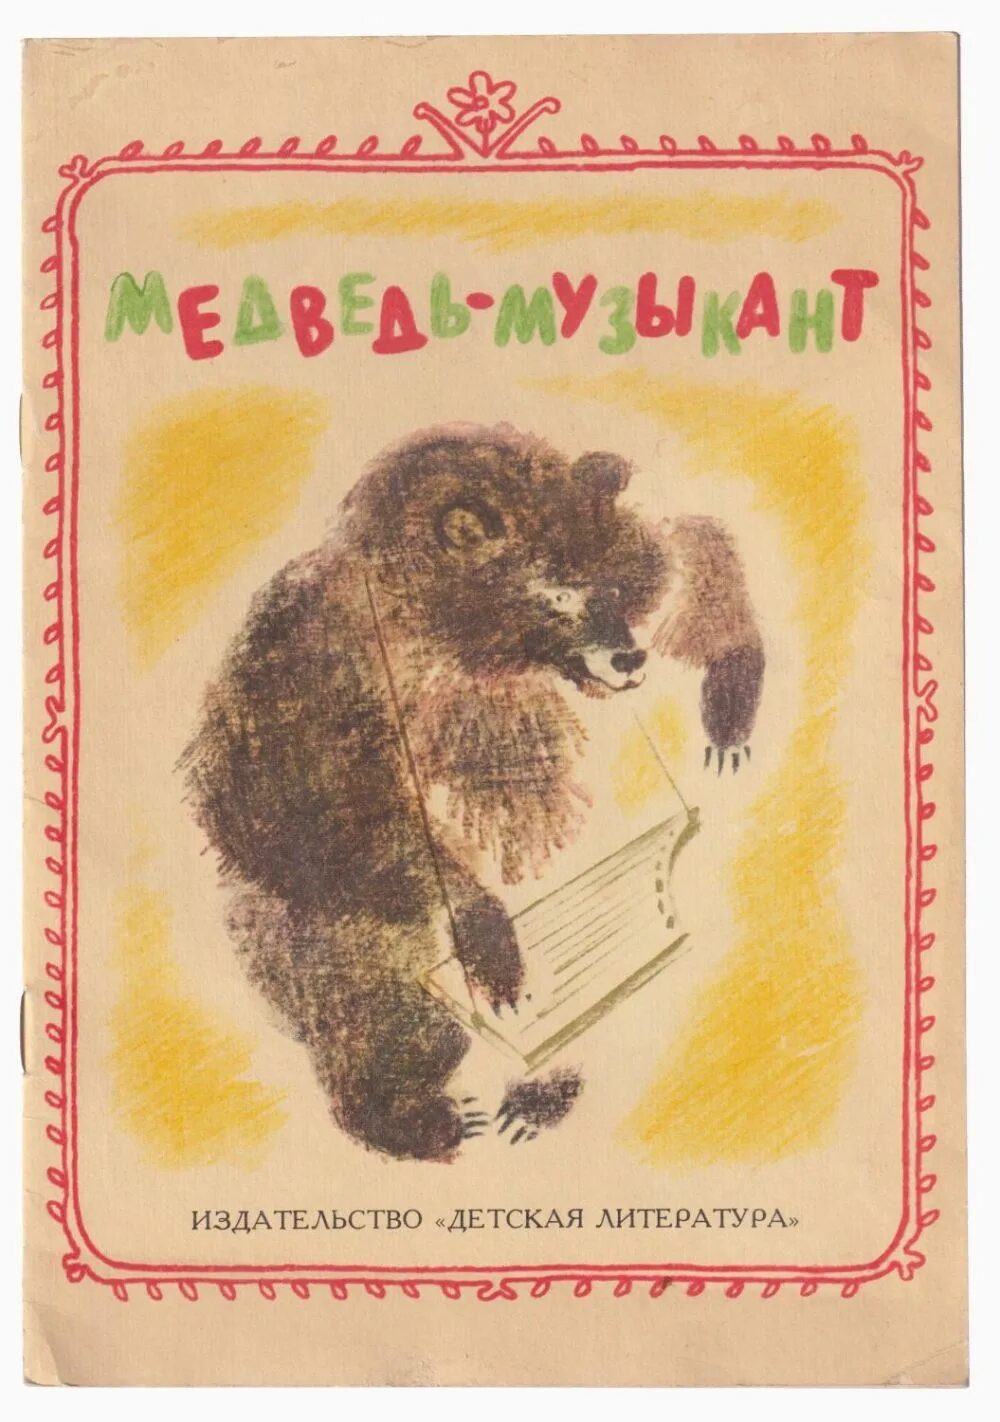 Училка и медведь читать. Пришвин медведь музыкант. Медведь музыкант 1976. Медведь - музыкант. Медведь-музыкант рассказ.